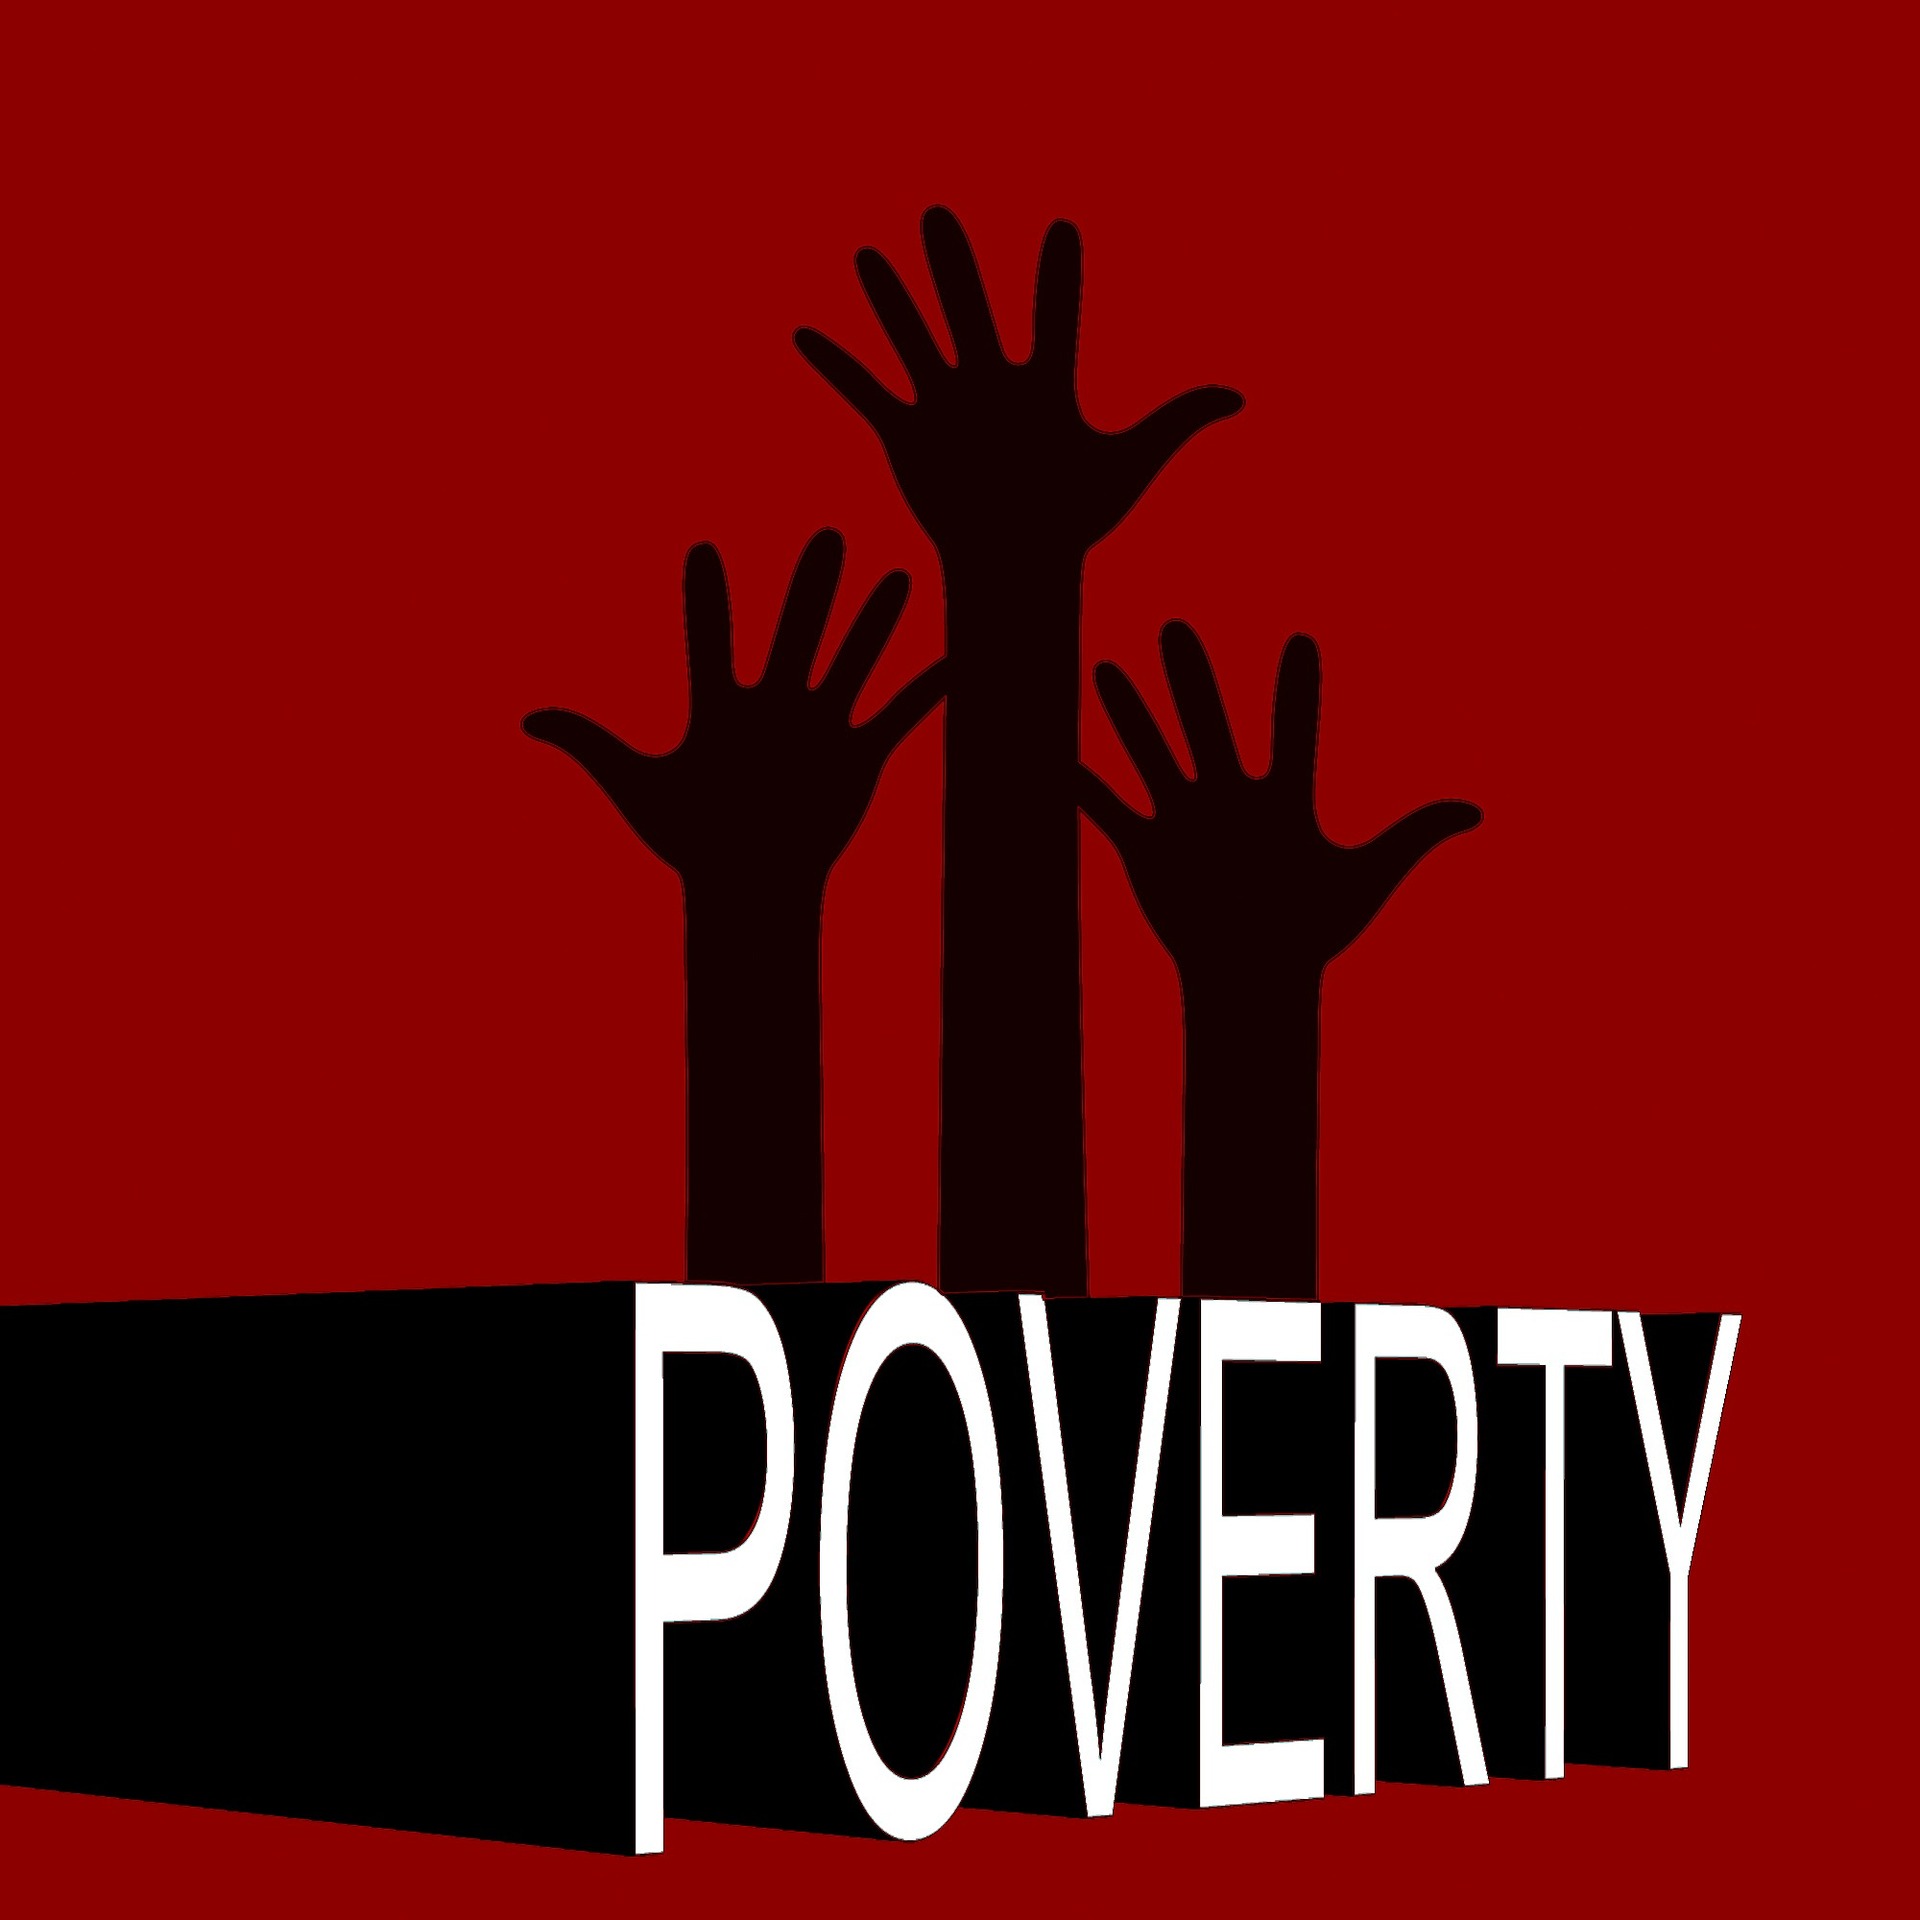 3 bras sortent du mot Poverty, comme un appel à l'aide